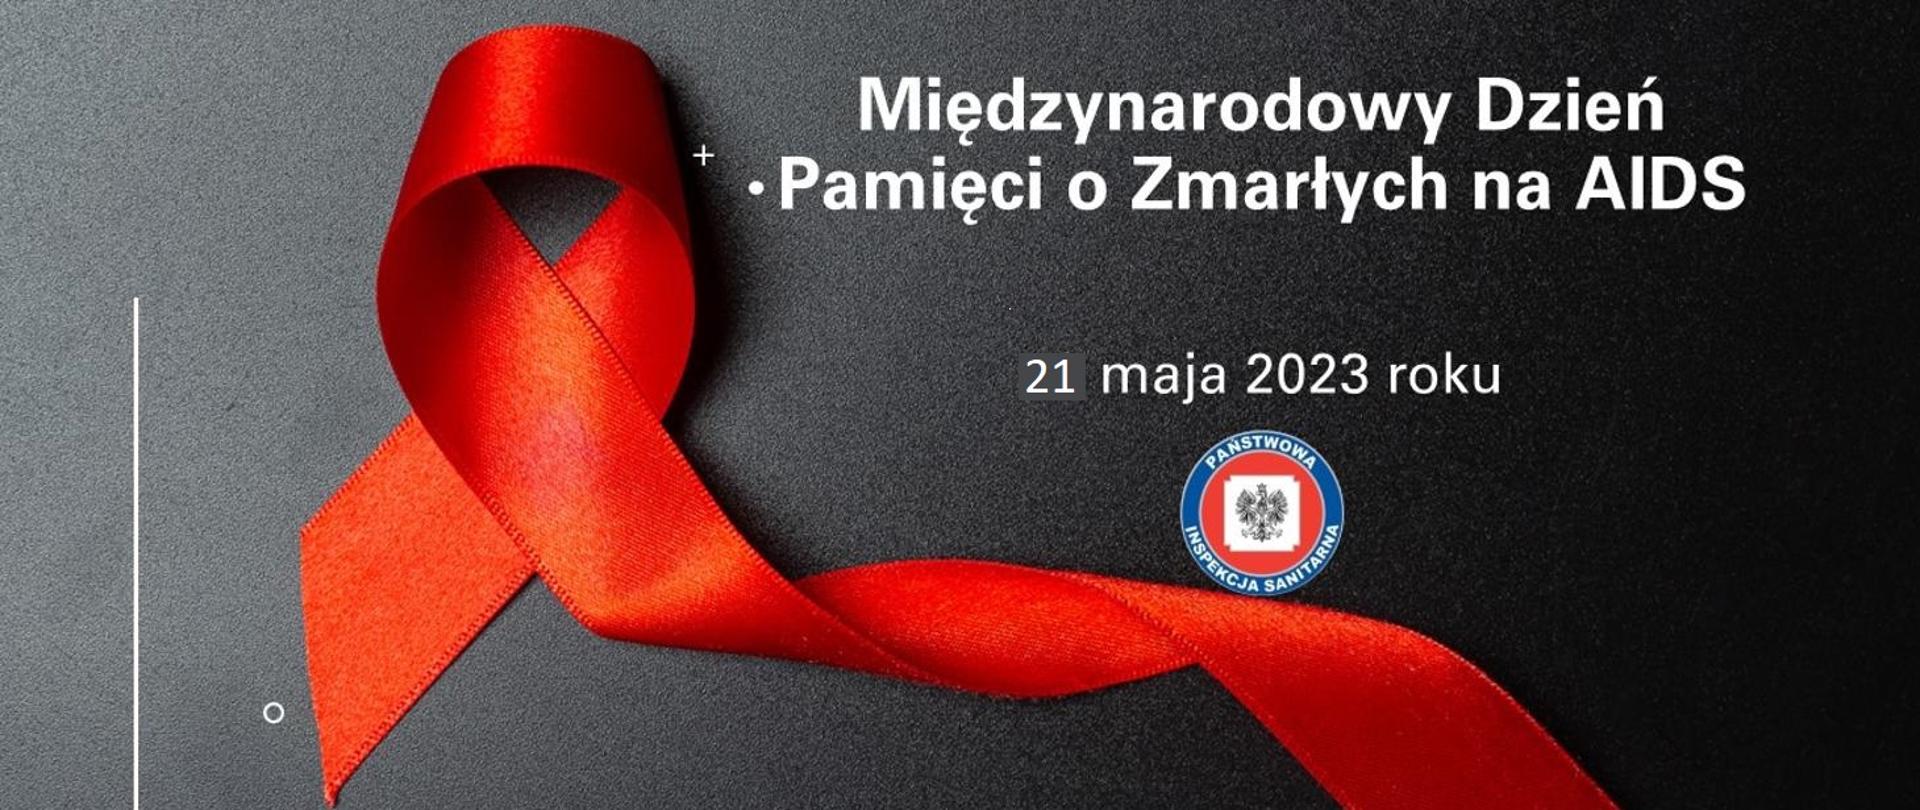 czarowana kokarda na ciemnym tle widnieje napis Międzynarodowy Dzień Pamięci o Zmarłych na AIDS z datą 21maja 2023